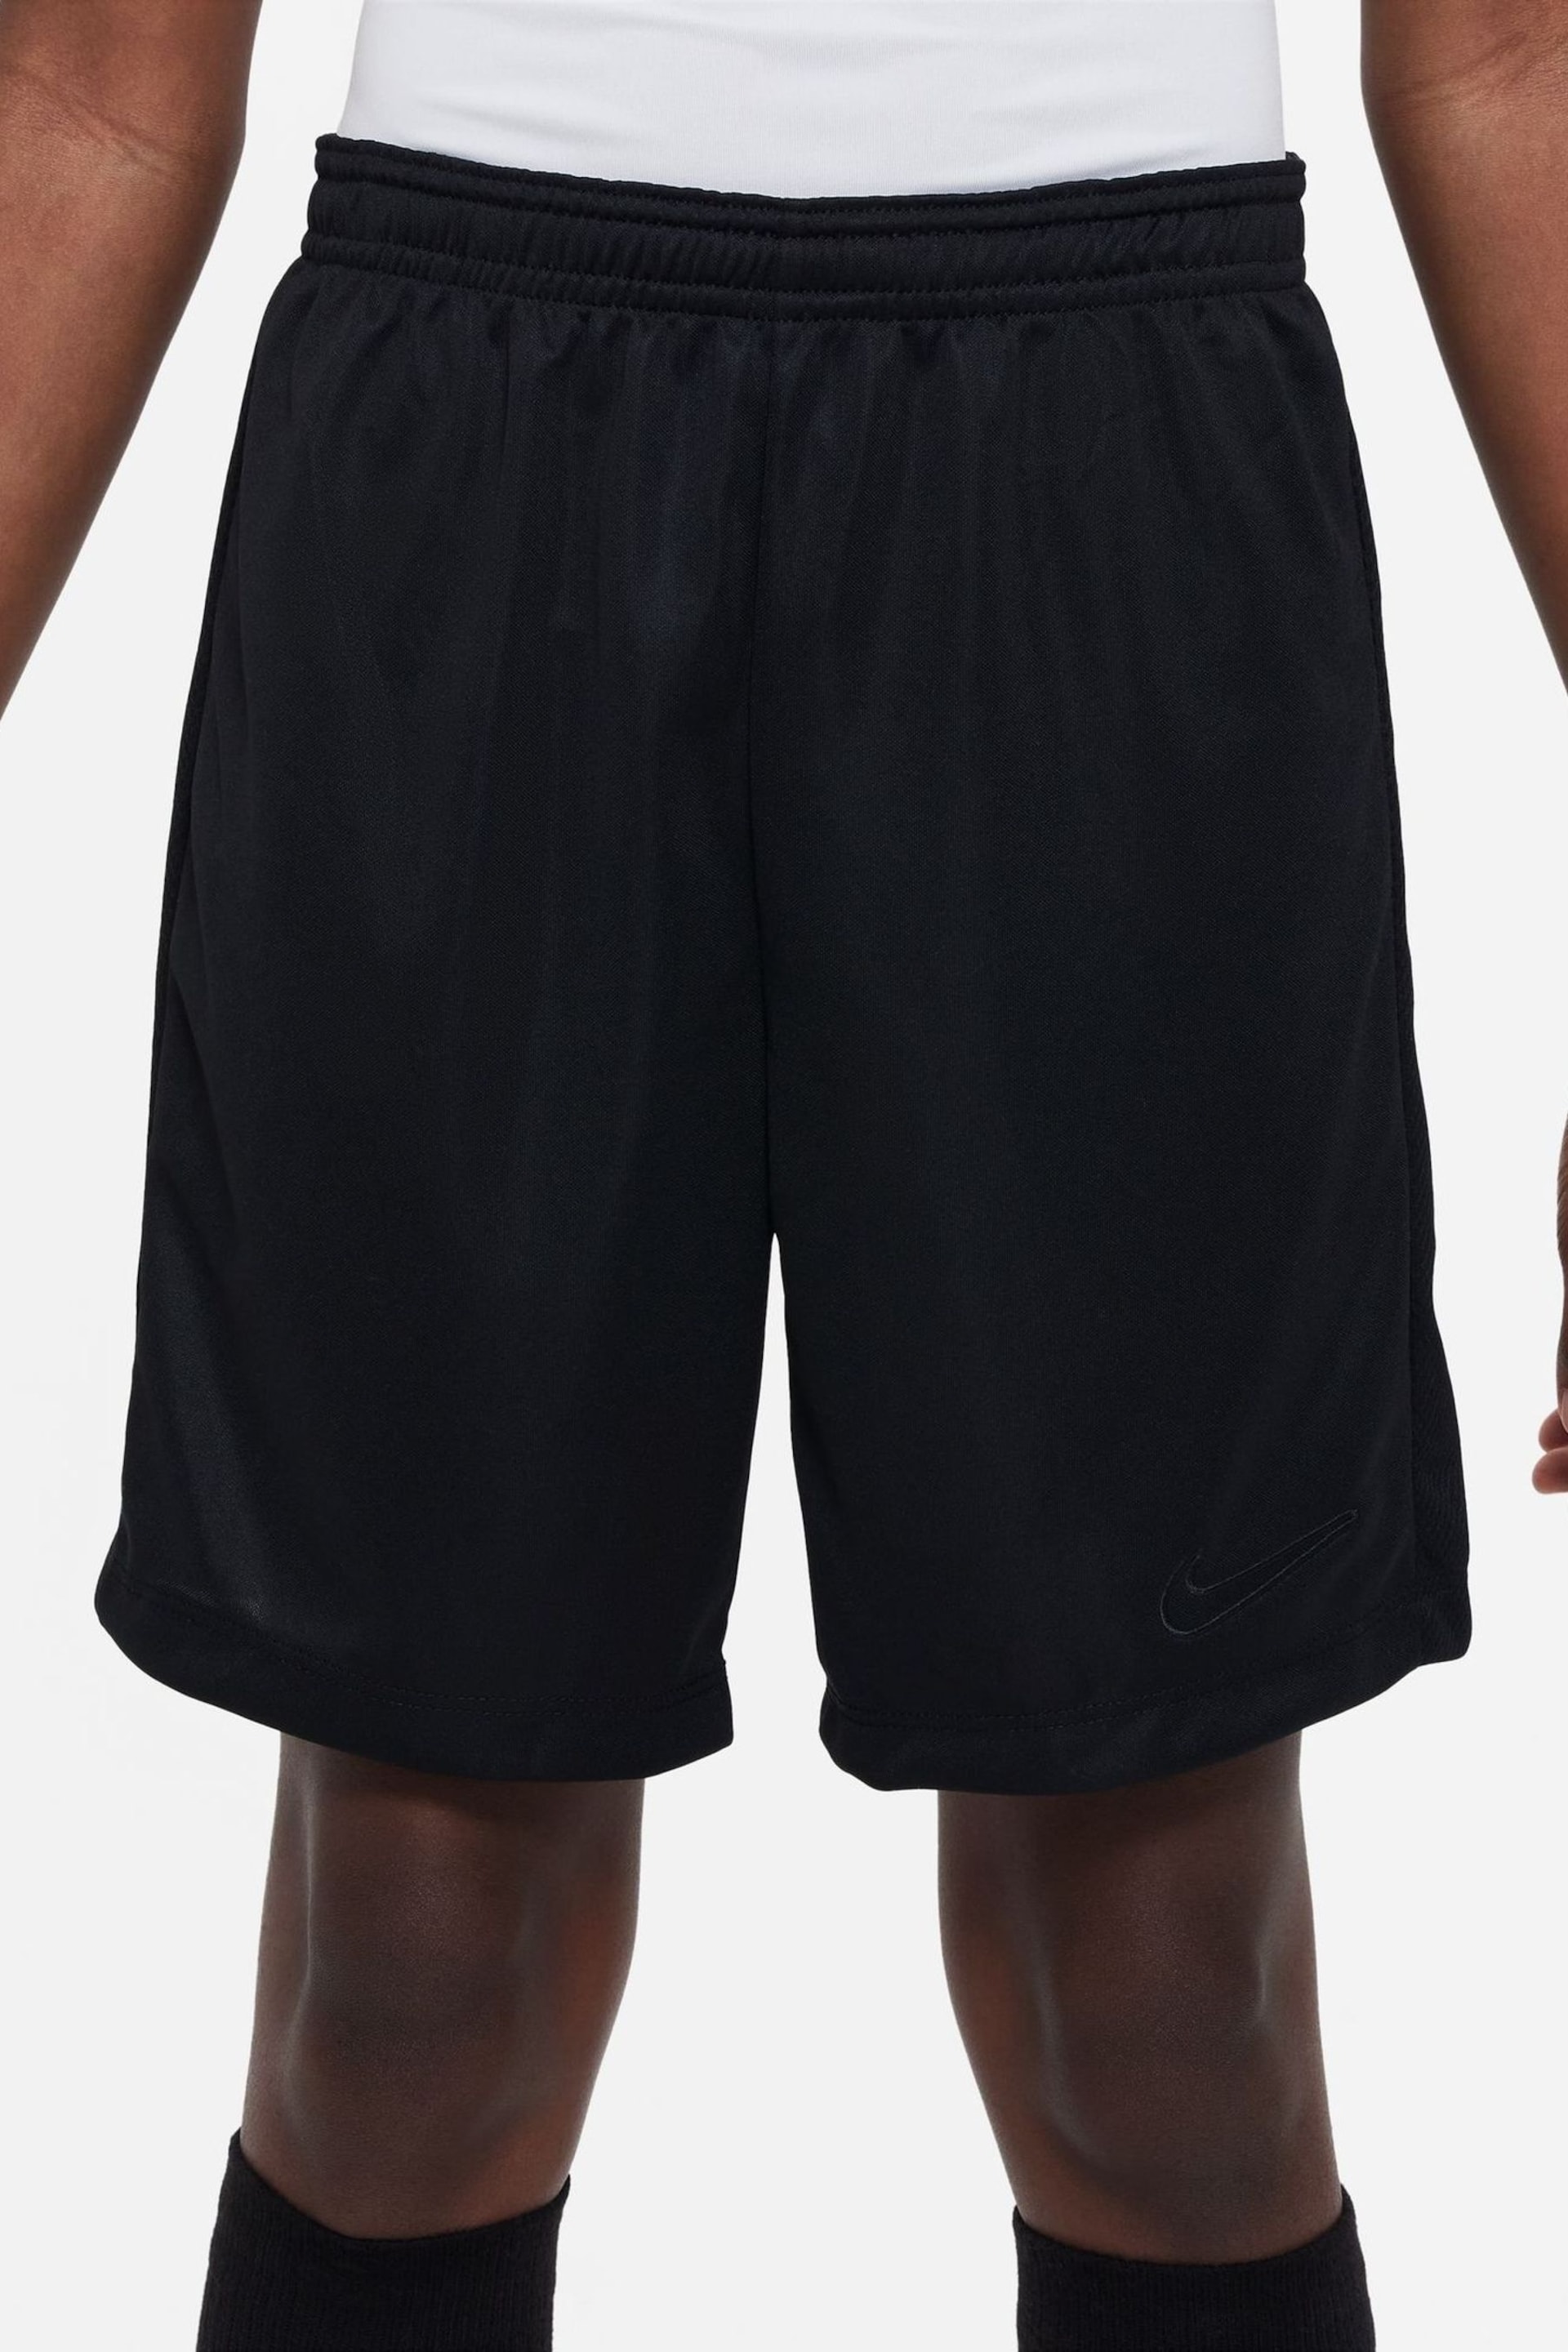 Nike Black Dri-FIT Academy Training Shorts - Image 2 of 9